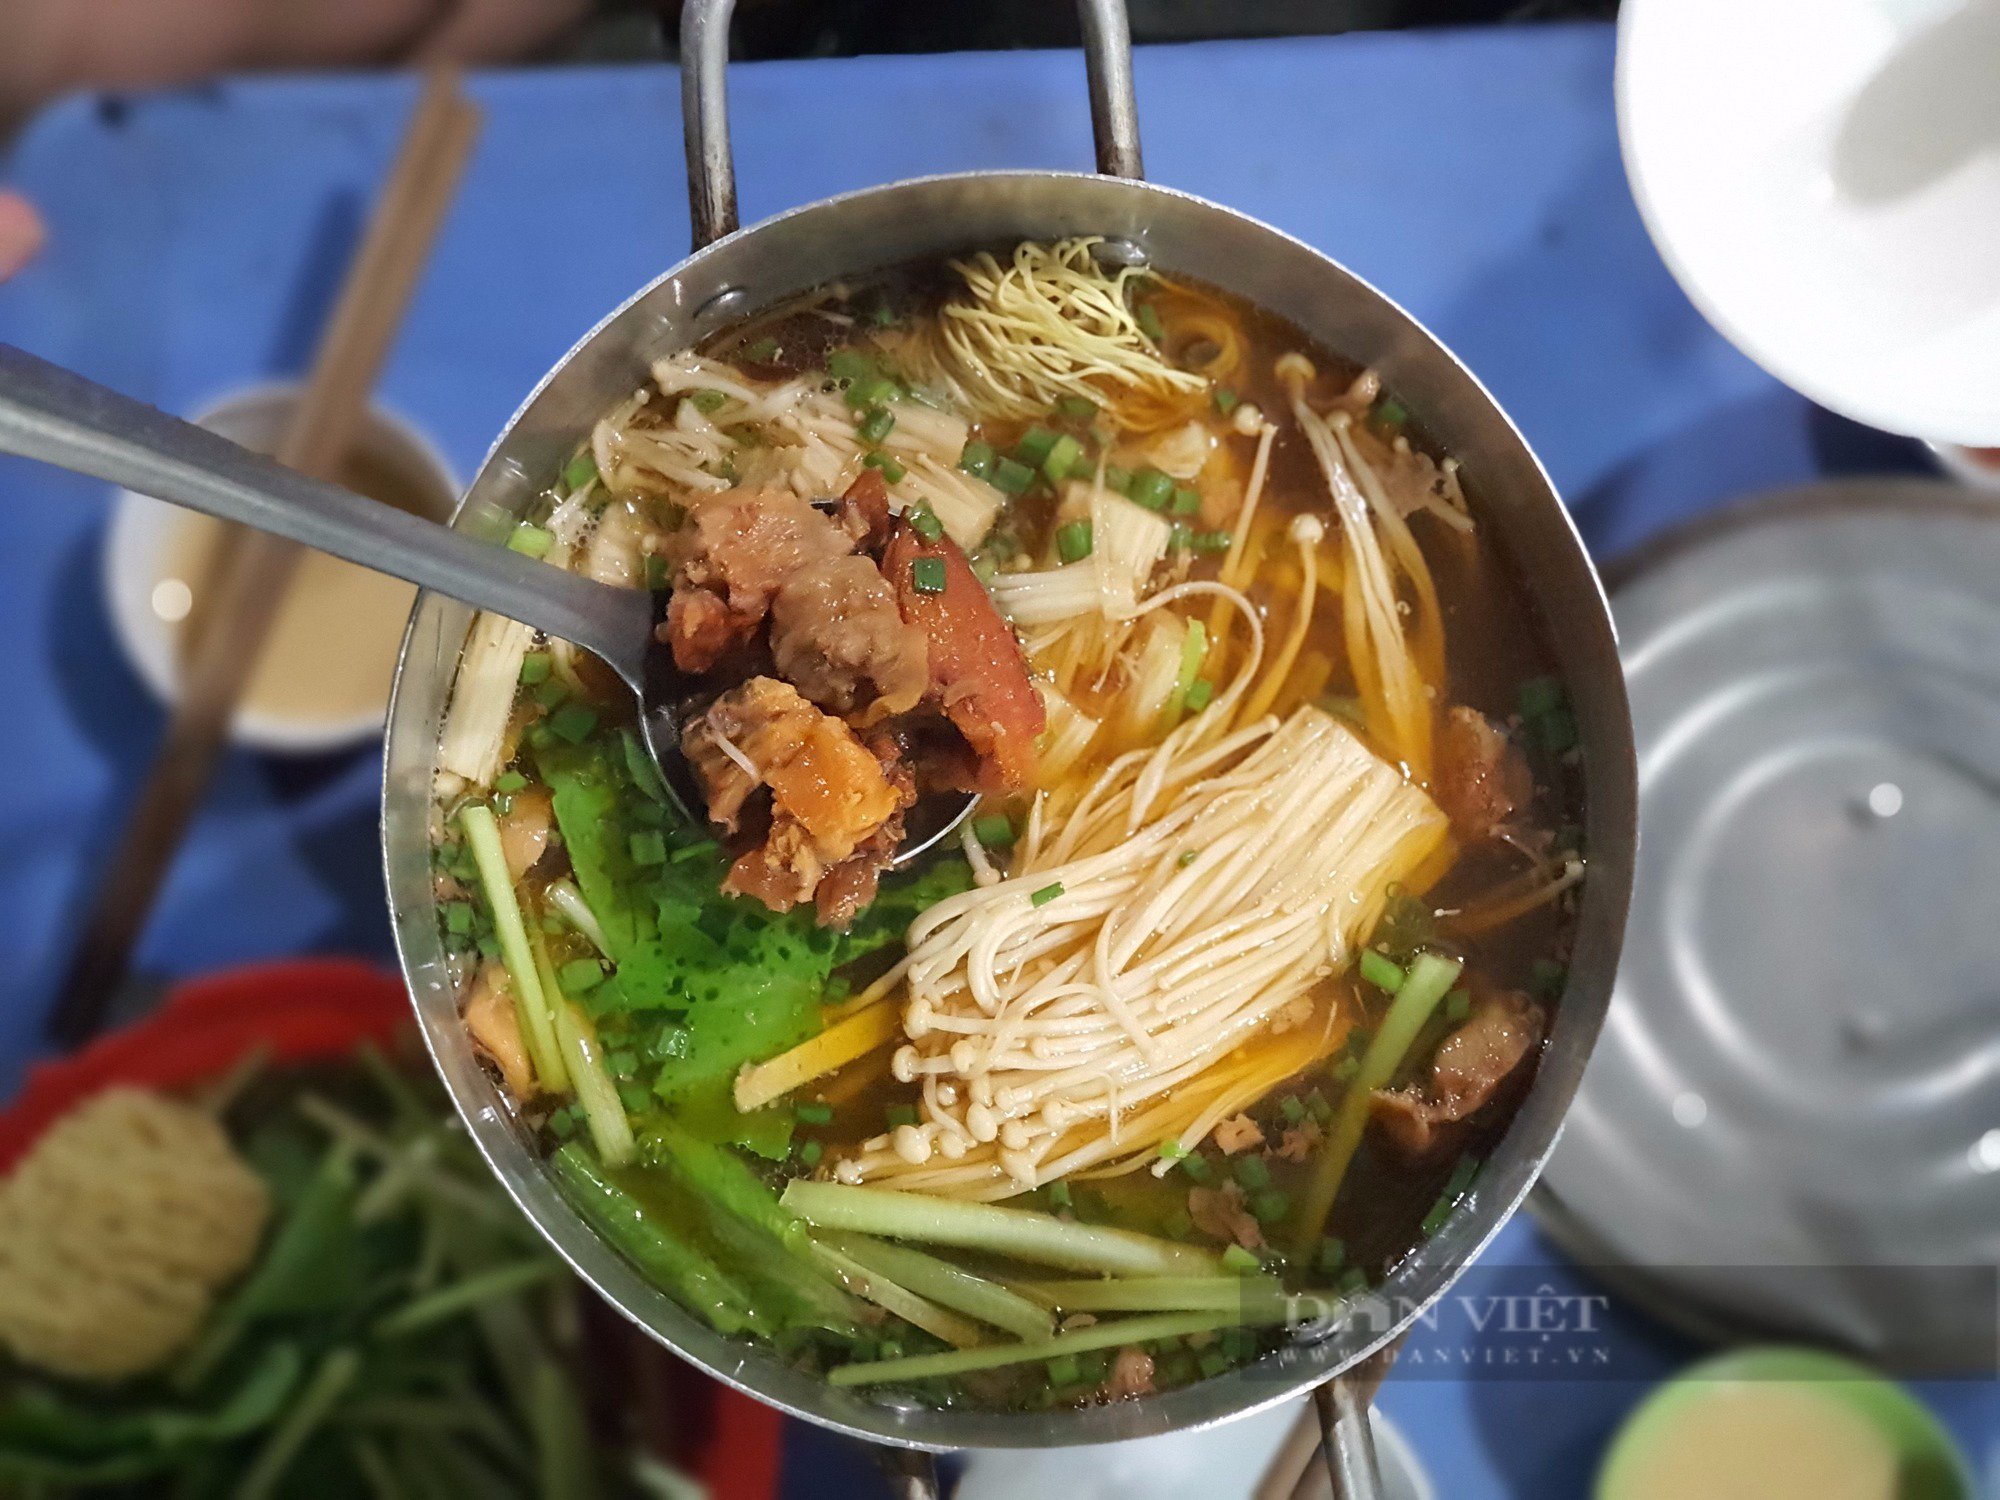 Sài Gòn quán: Lẩu bò kho Campuchia trên bếp than hồng, hương vị độc lạ khu Vườn Chuối - Ảnh 3.